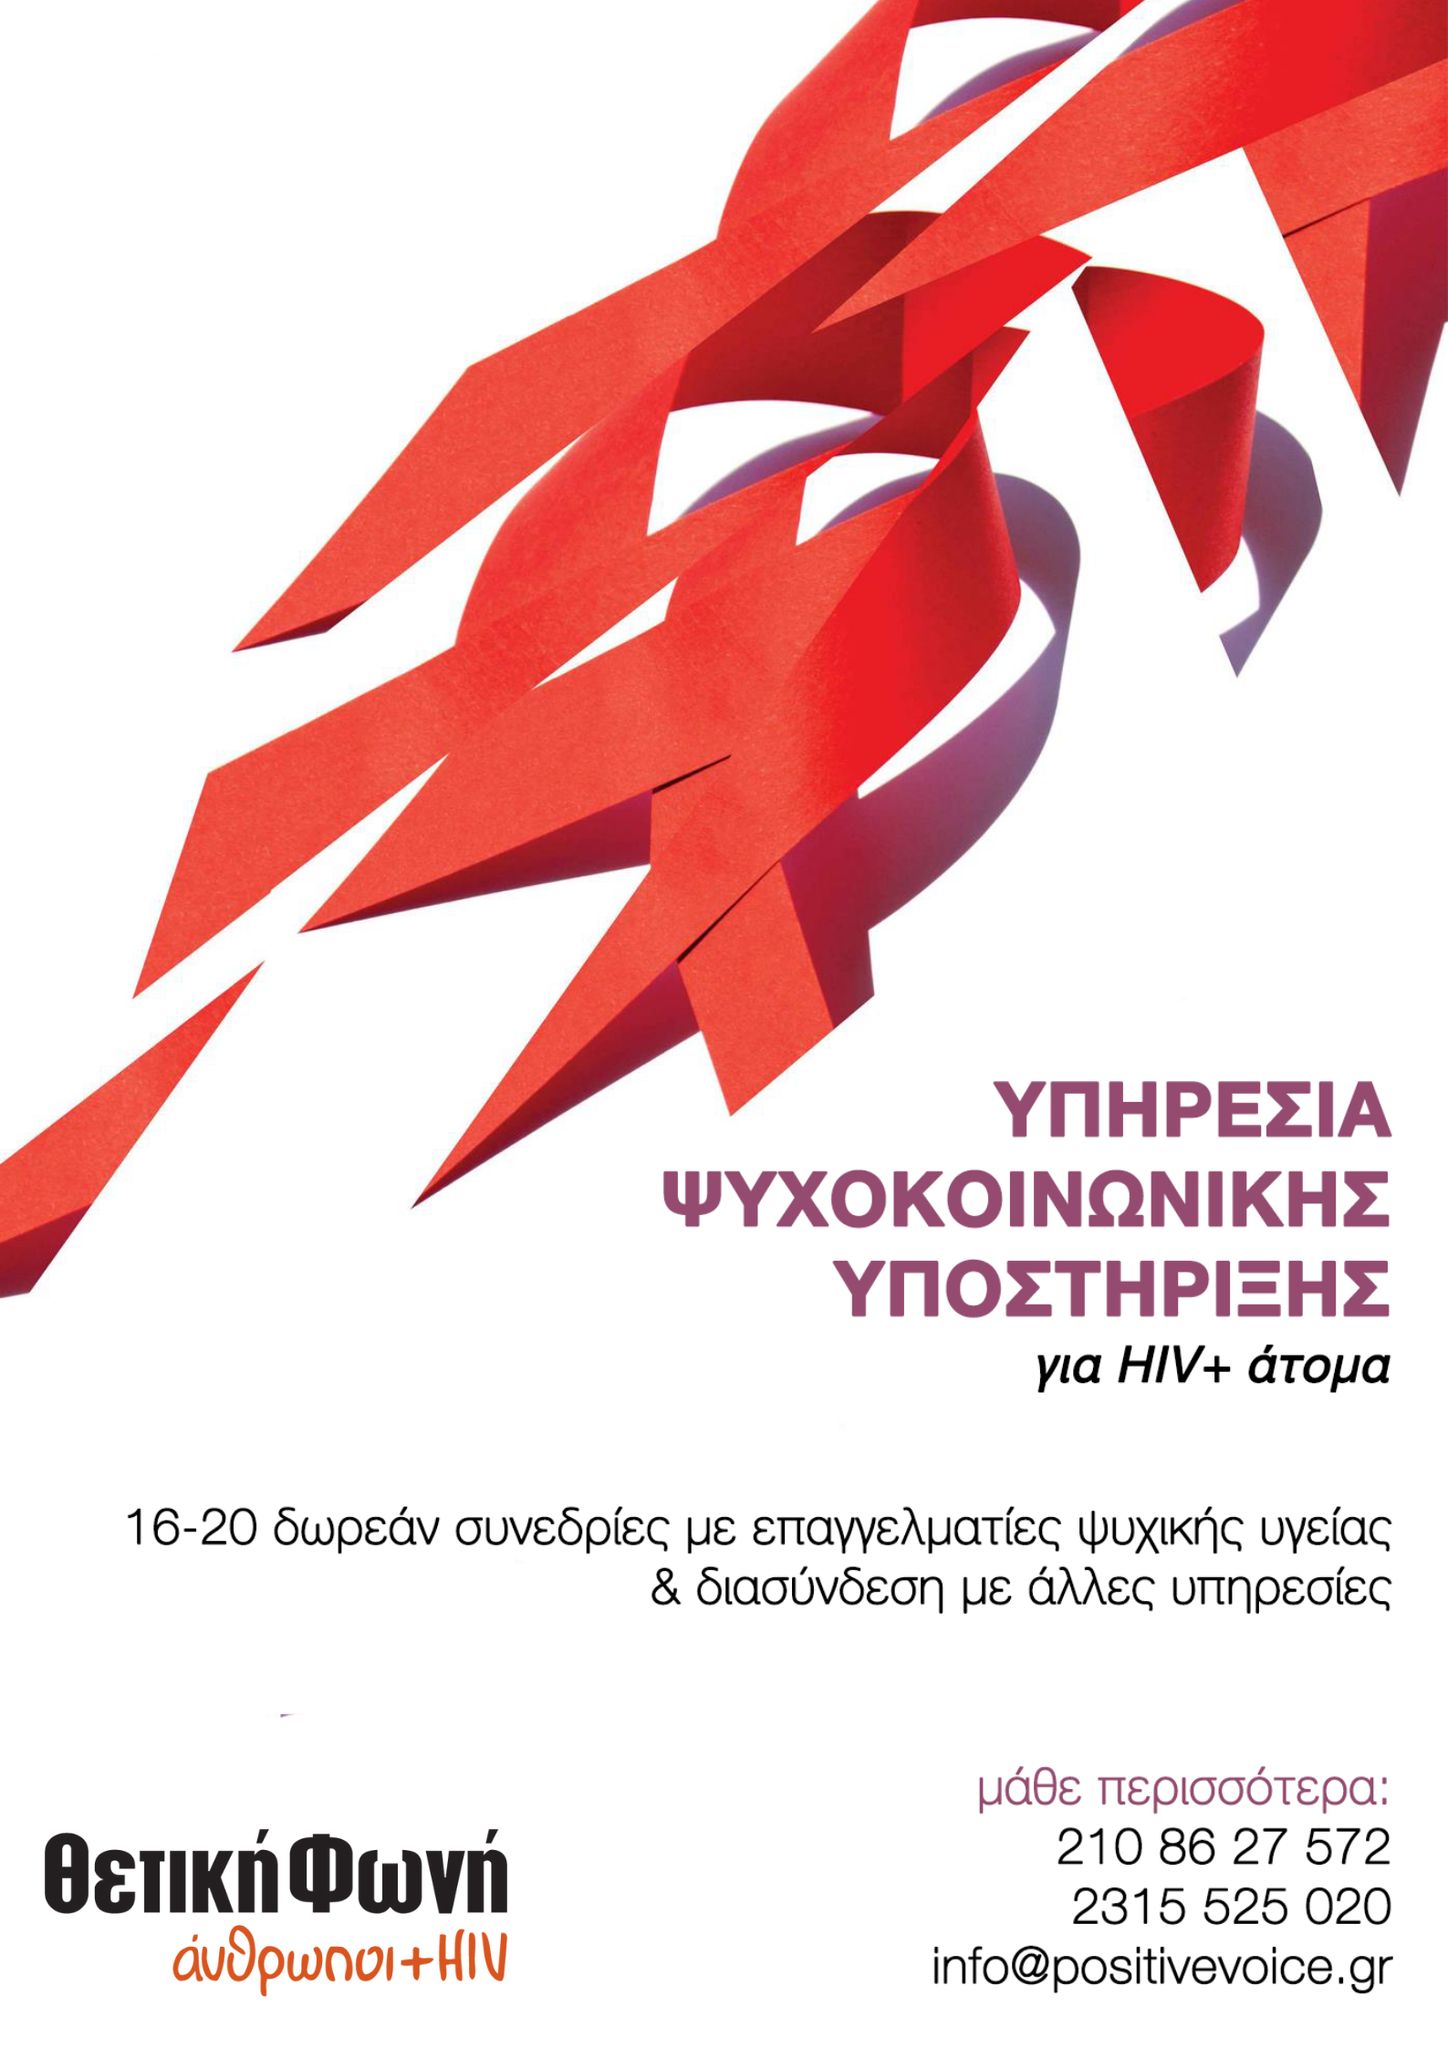 Featured image for “Νέα, δωρεάν υπηρεσία Ψυχοκοινωνικής Υποστήριξης για άτομα που ζουν με HIV+”